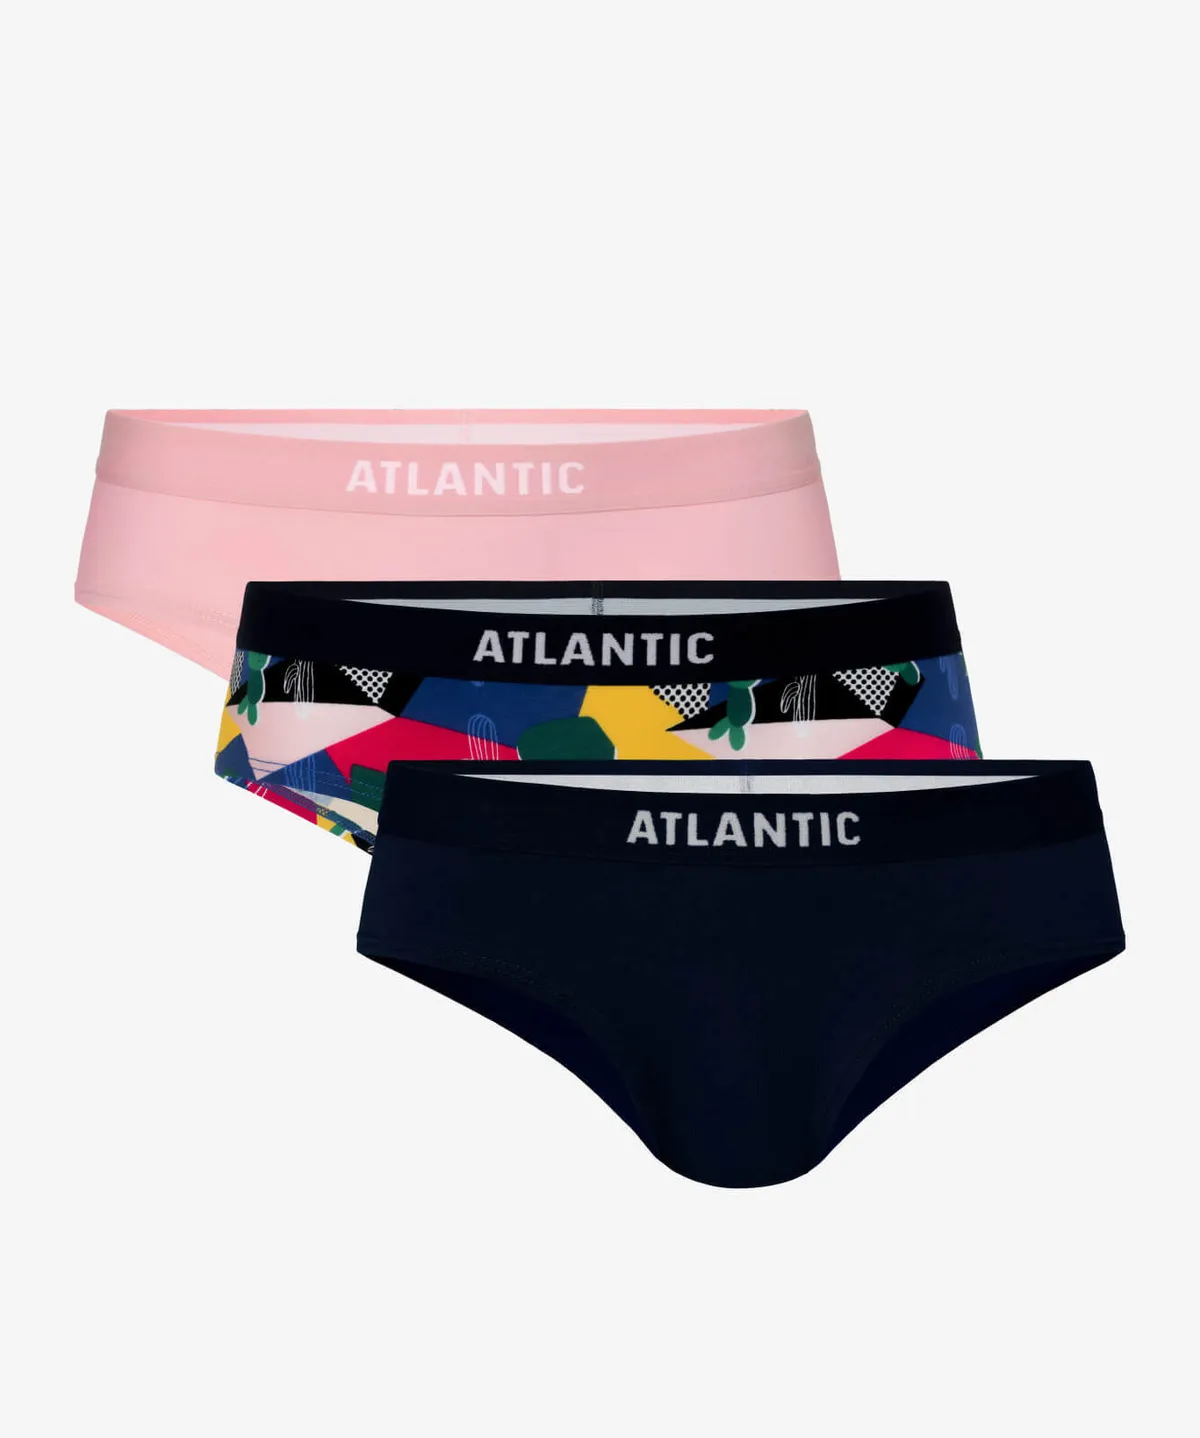 Трусы женские хипстер Atlantic, набор из 3 шт., хлопок, розовые +  темно-синие, 3LP-181 - купить из наличия со скидкой в официальном  интернет-магазине польского бренда нижнего белья Атлантик | Atlantic -  фирменный магазин